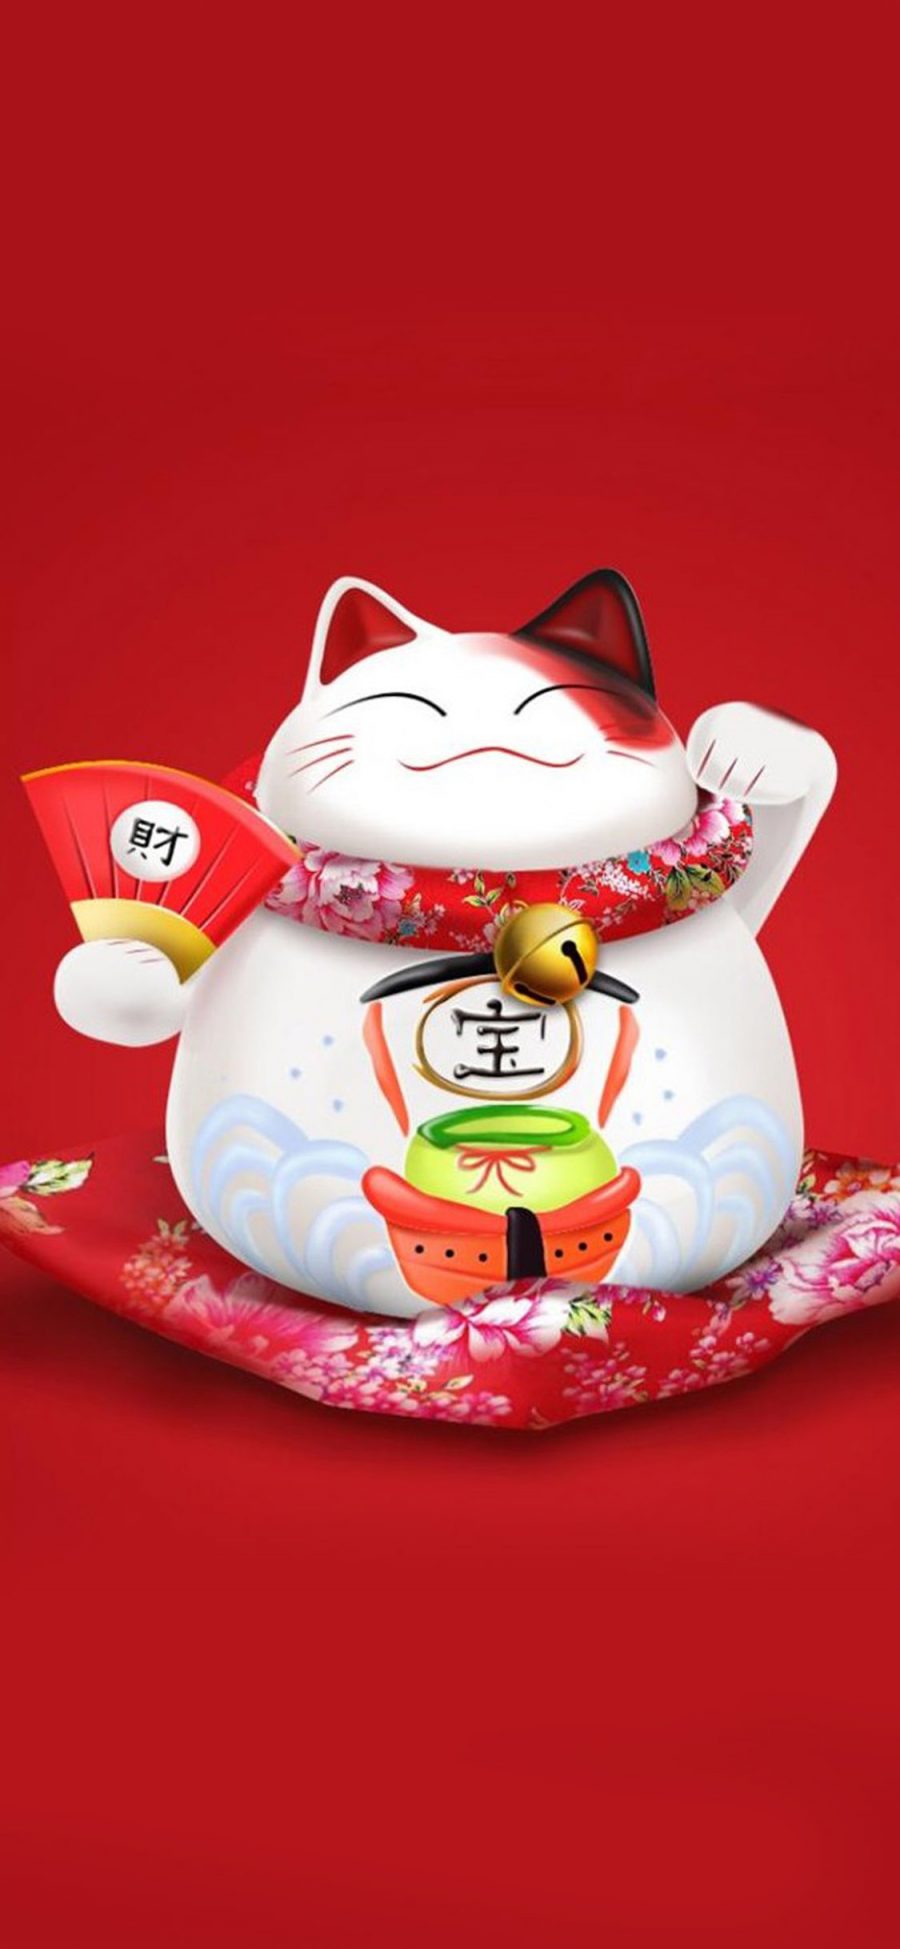 [2436×1125]卡通 招财猫 可爱 萌 红色 漫画 苹果手机动漫壁纸图片